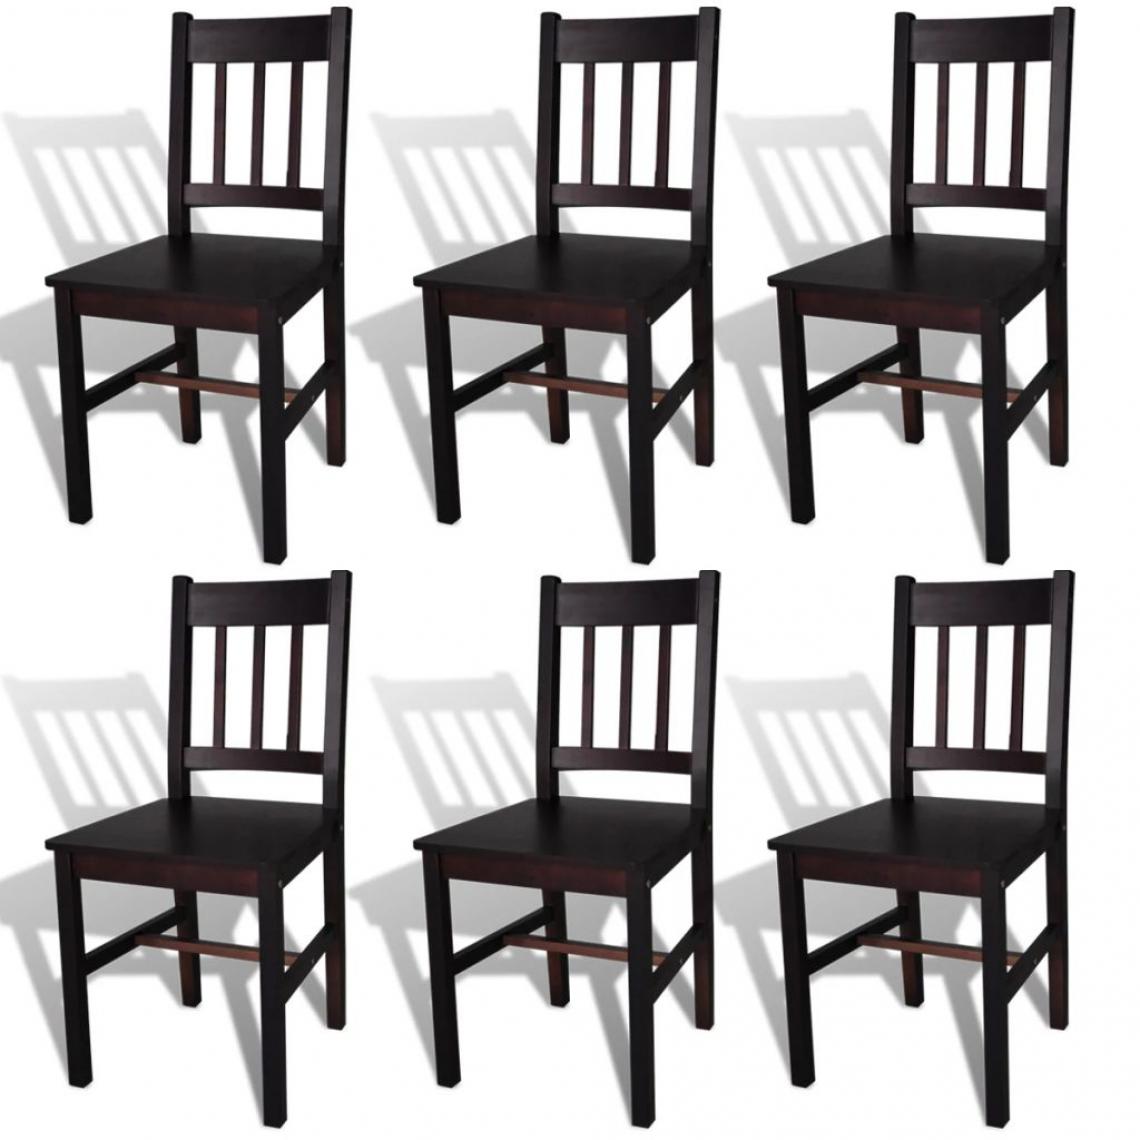 Decoshop26 - Lot de 6 chaises de salle à manger cuisine design classique pinède marron foncé CDS022570 - Chaises